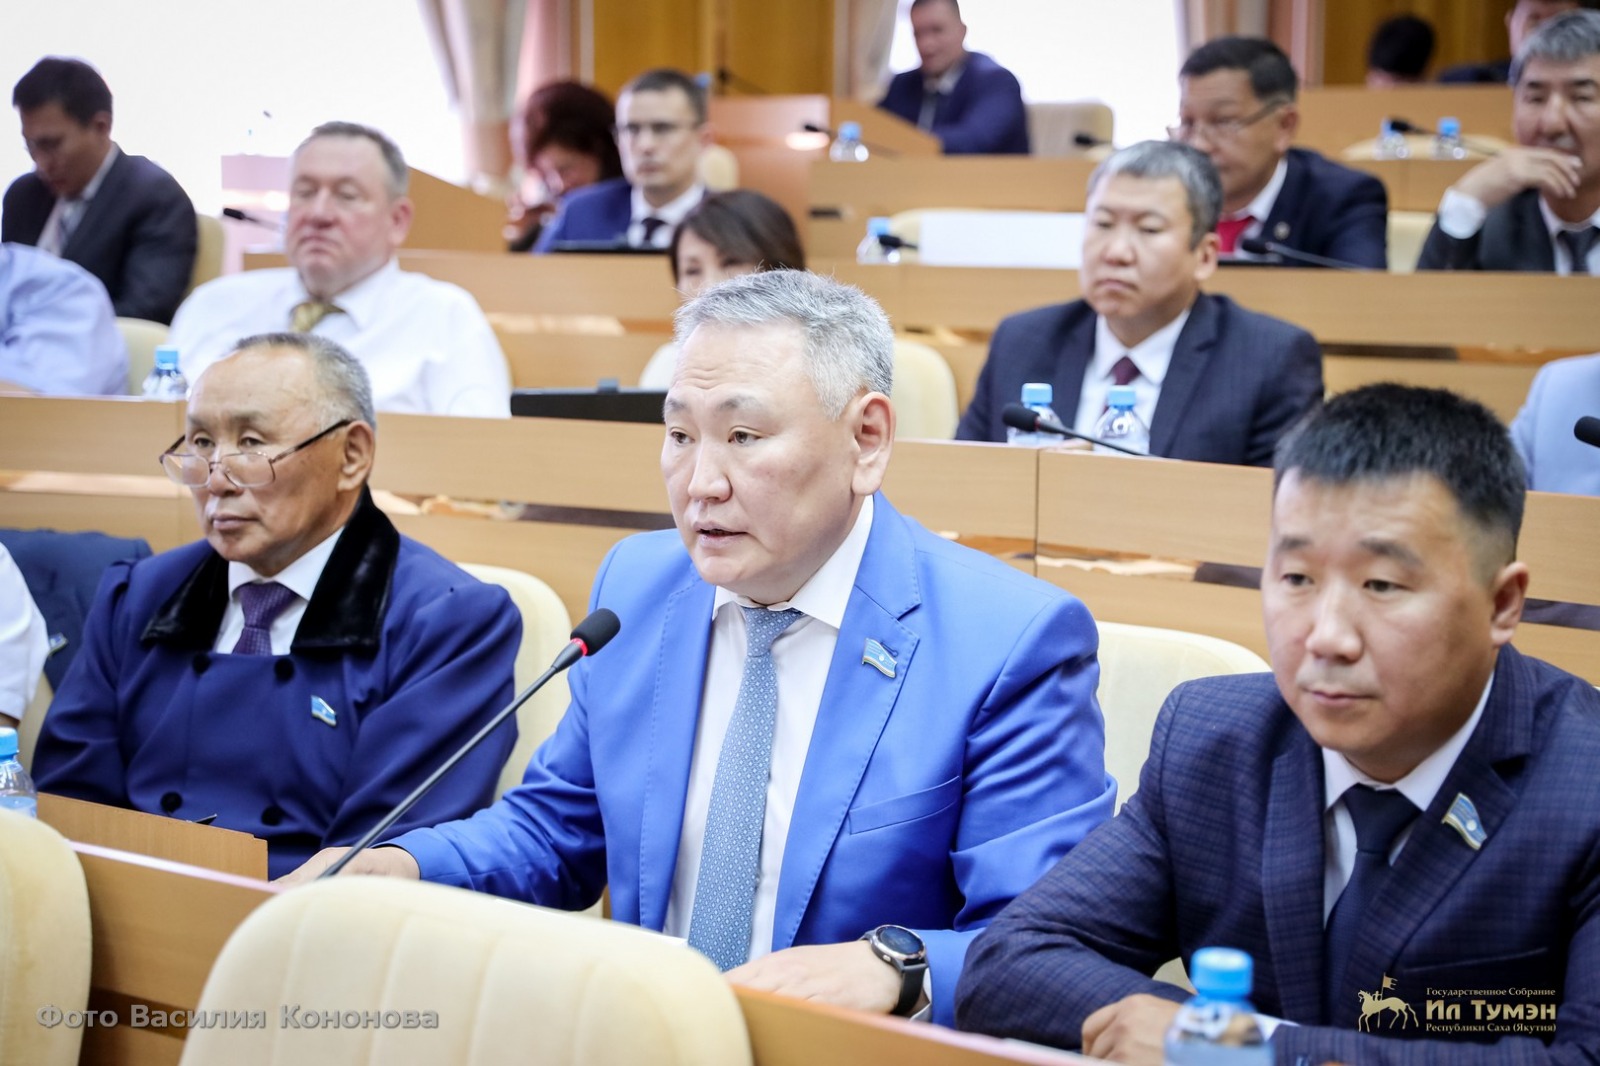 Сахамин Афанасьев: Парламент Якутии – законодательная поддержка решений президента России и главы республики